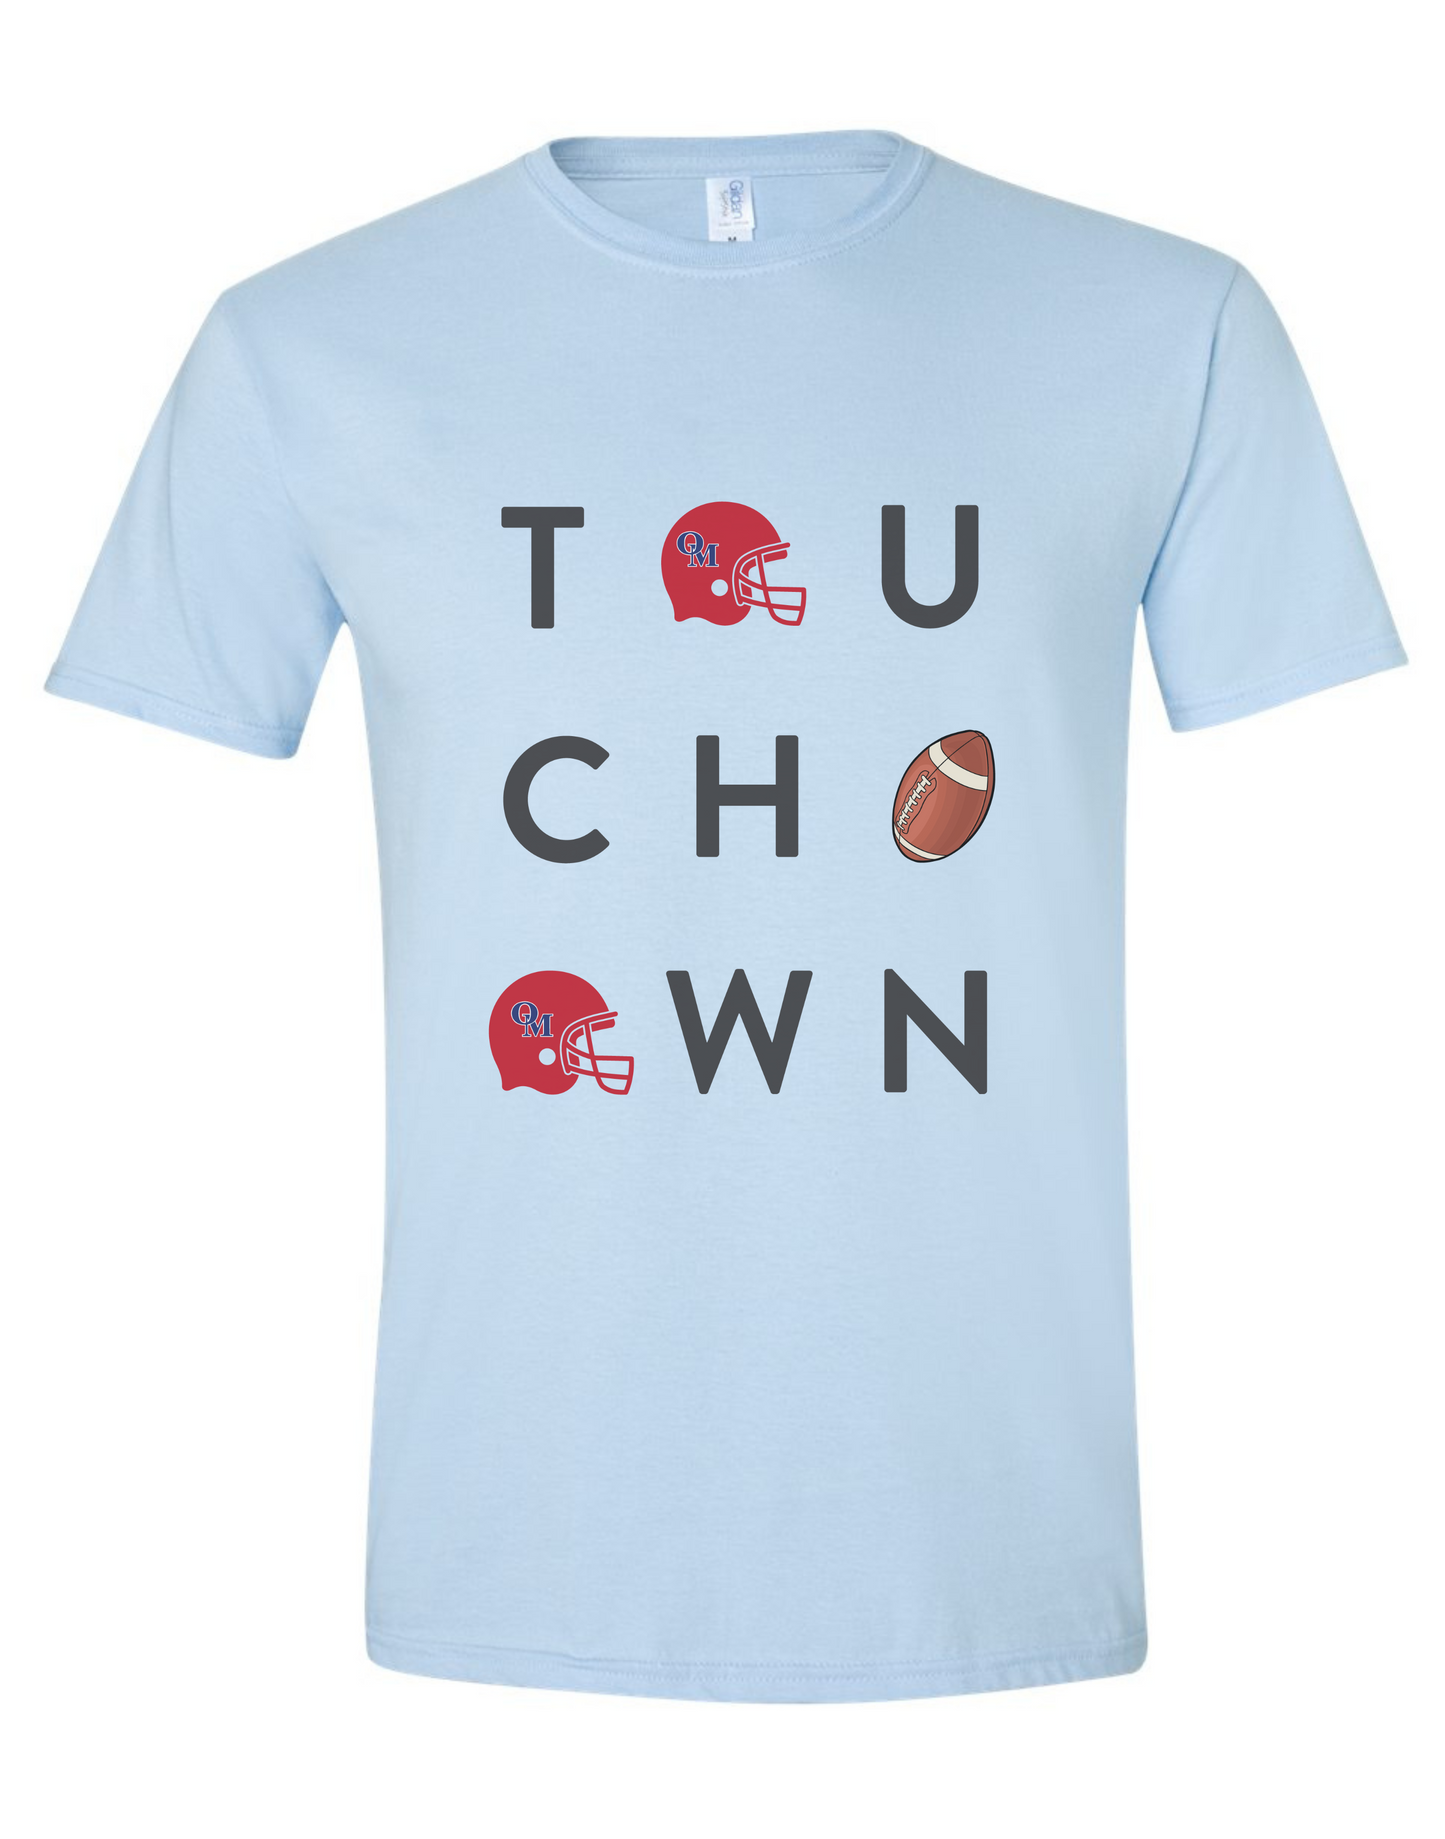 ADULT T'shirts Touchdown Oak Mtn CREWNECKS-multiple colors avail